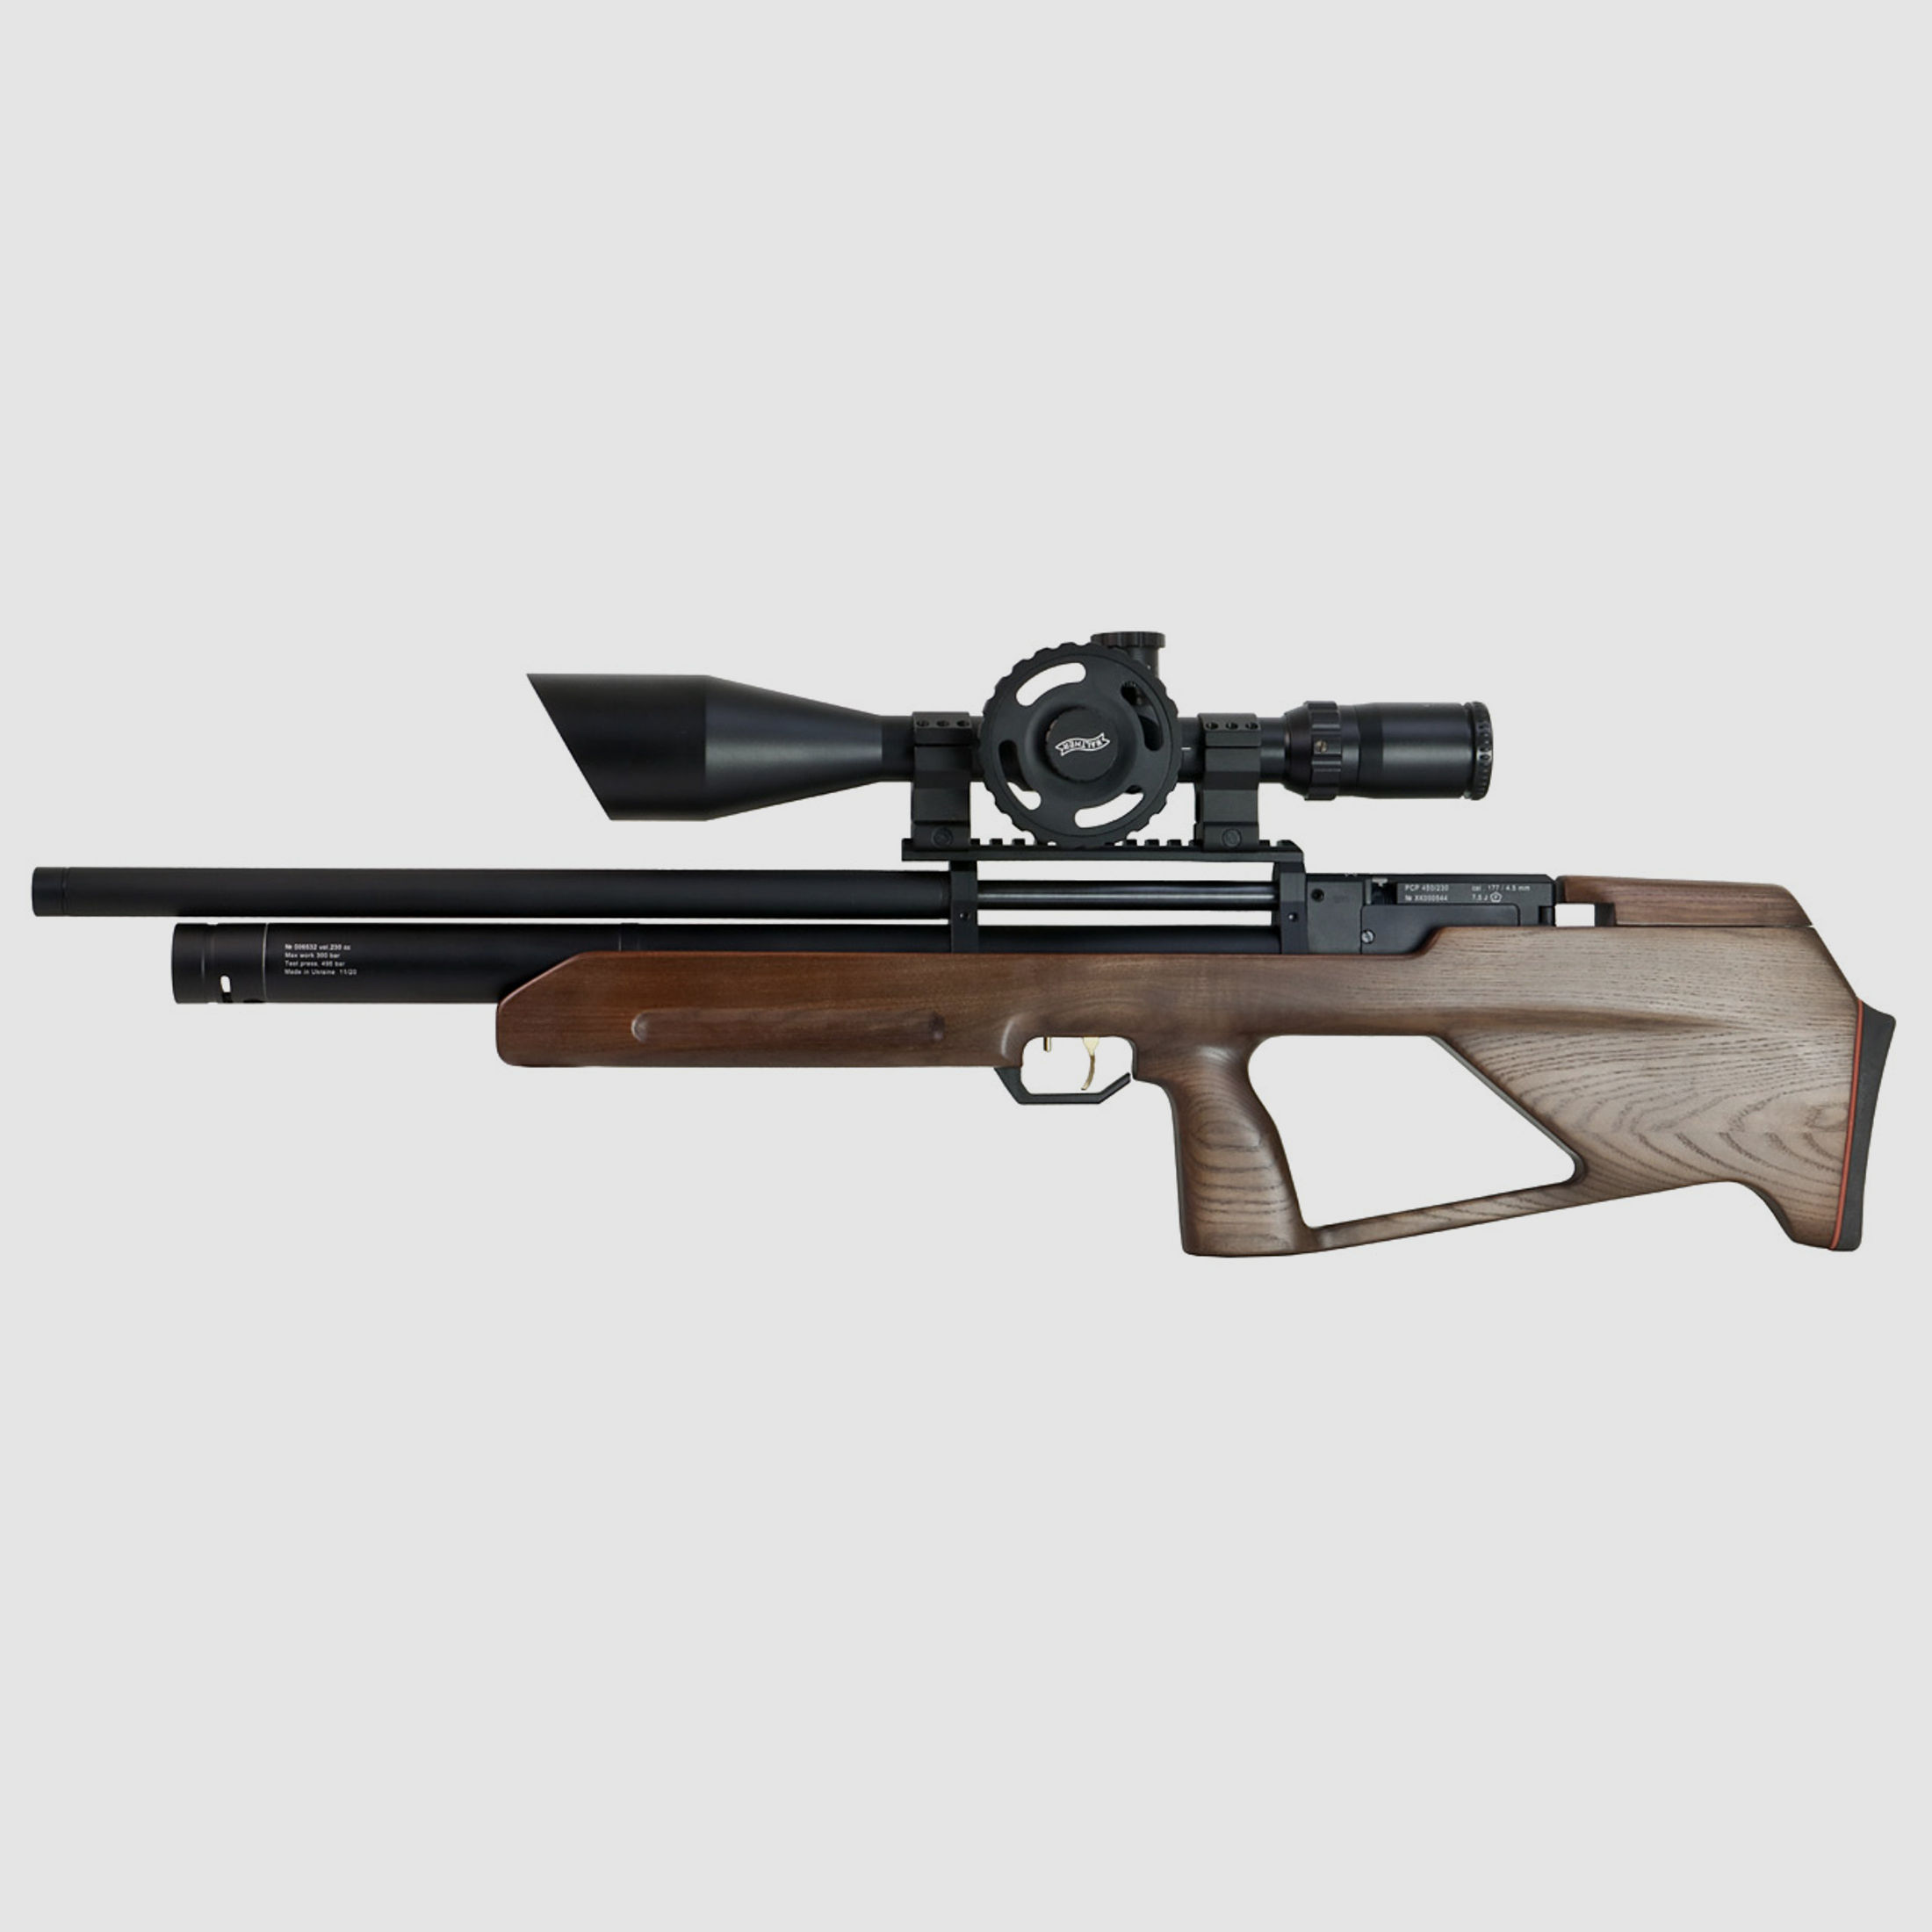 Bullpup Pressluftgewehr Zbroia Kozak mit integriertem SchalldĂ¤mpfer, Holzschaft braun, Kaliber 4,5 mm (P18)